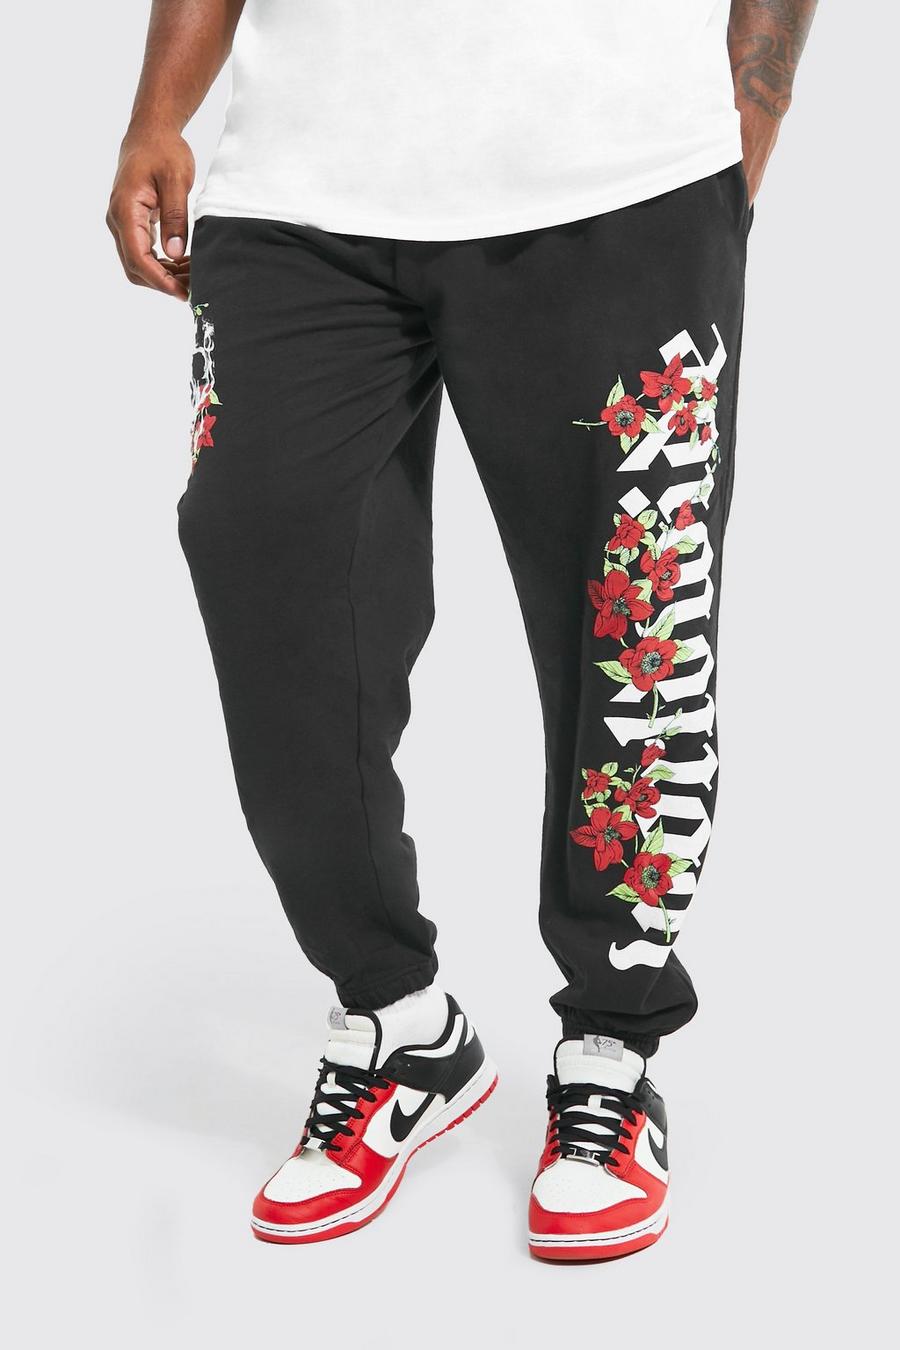 Pantalón deportivo Plus con estampado gráfico de flores y calavera, Black negro